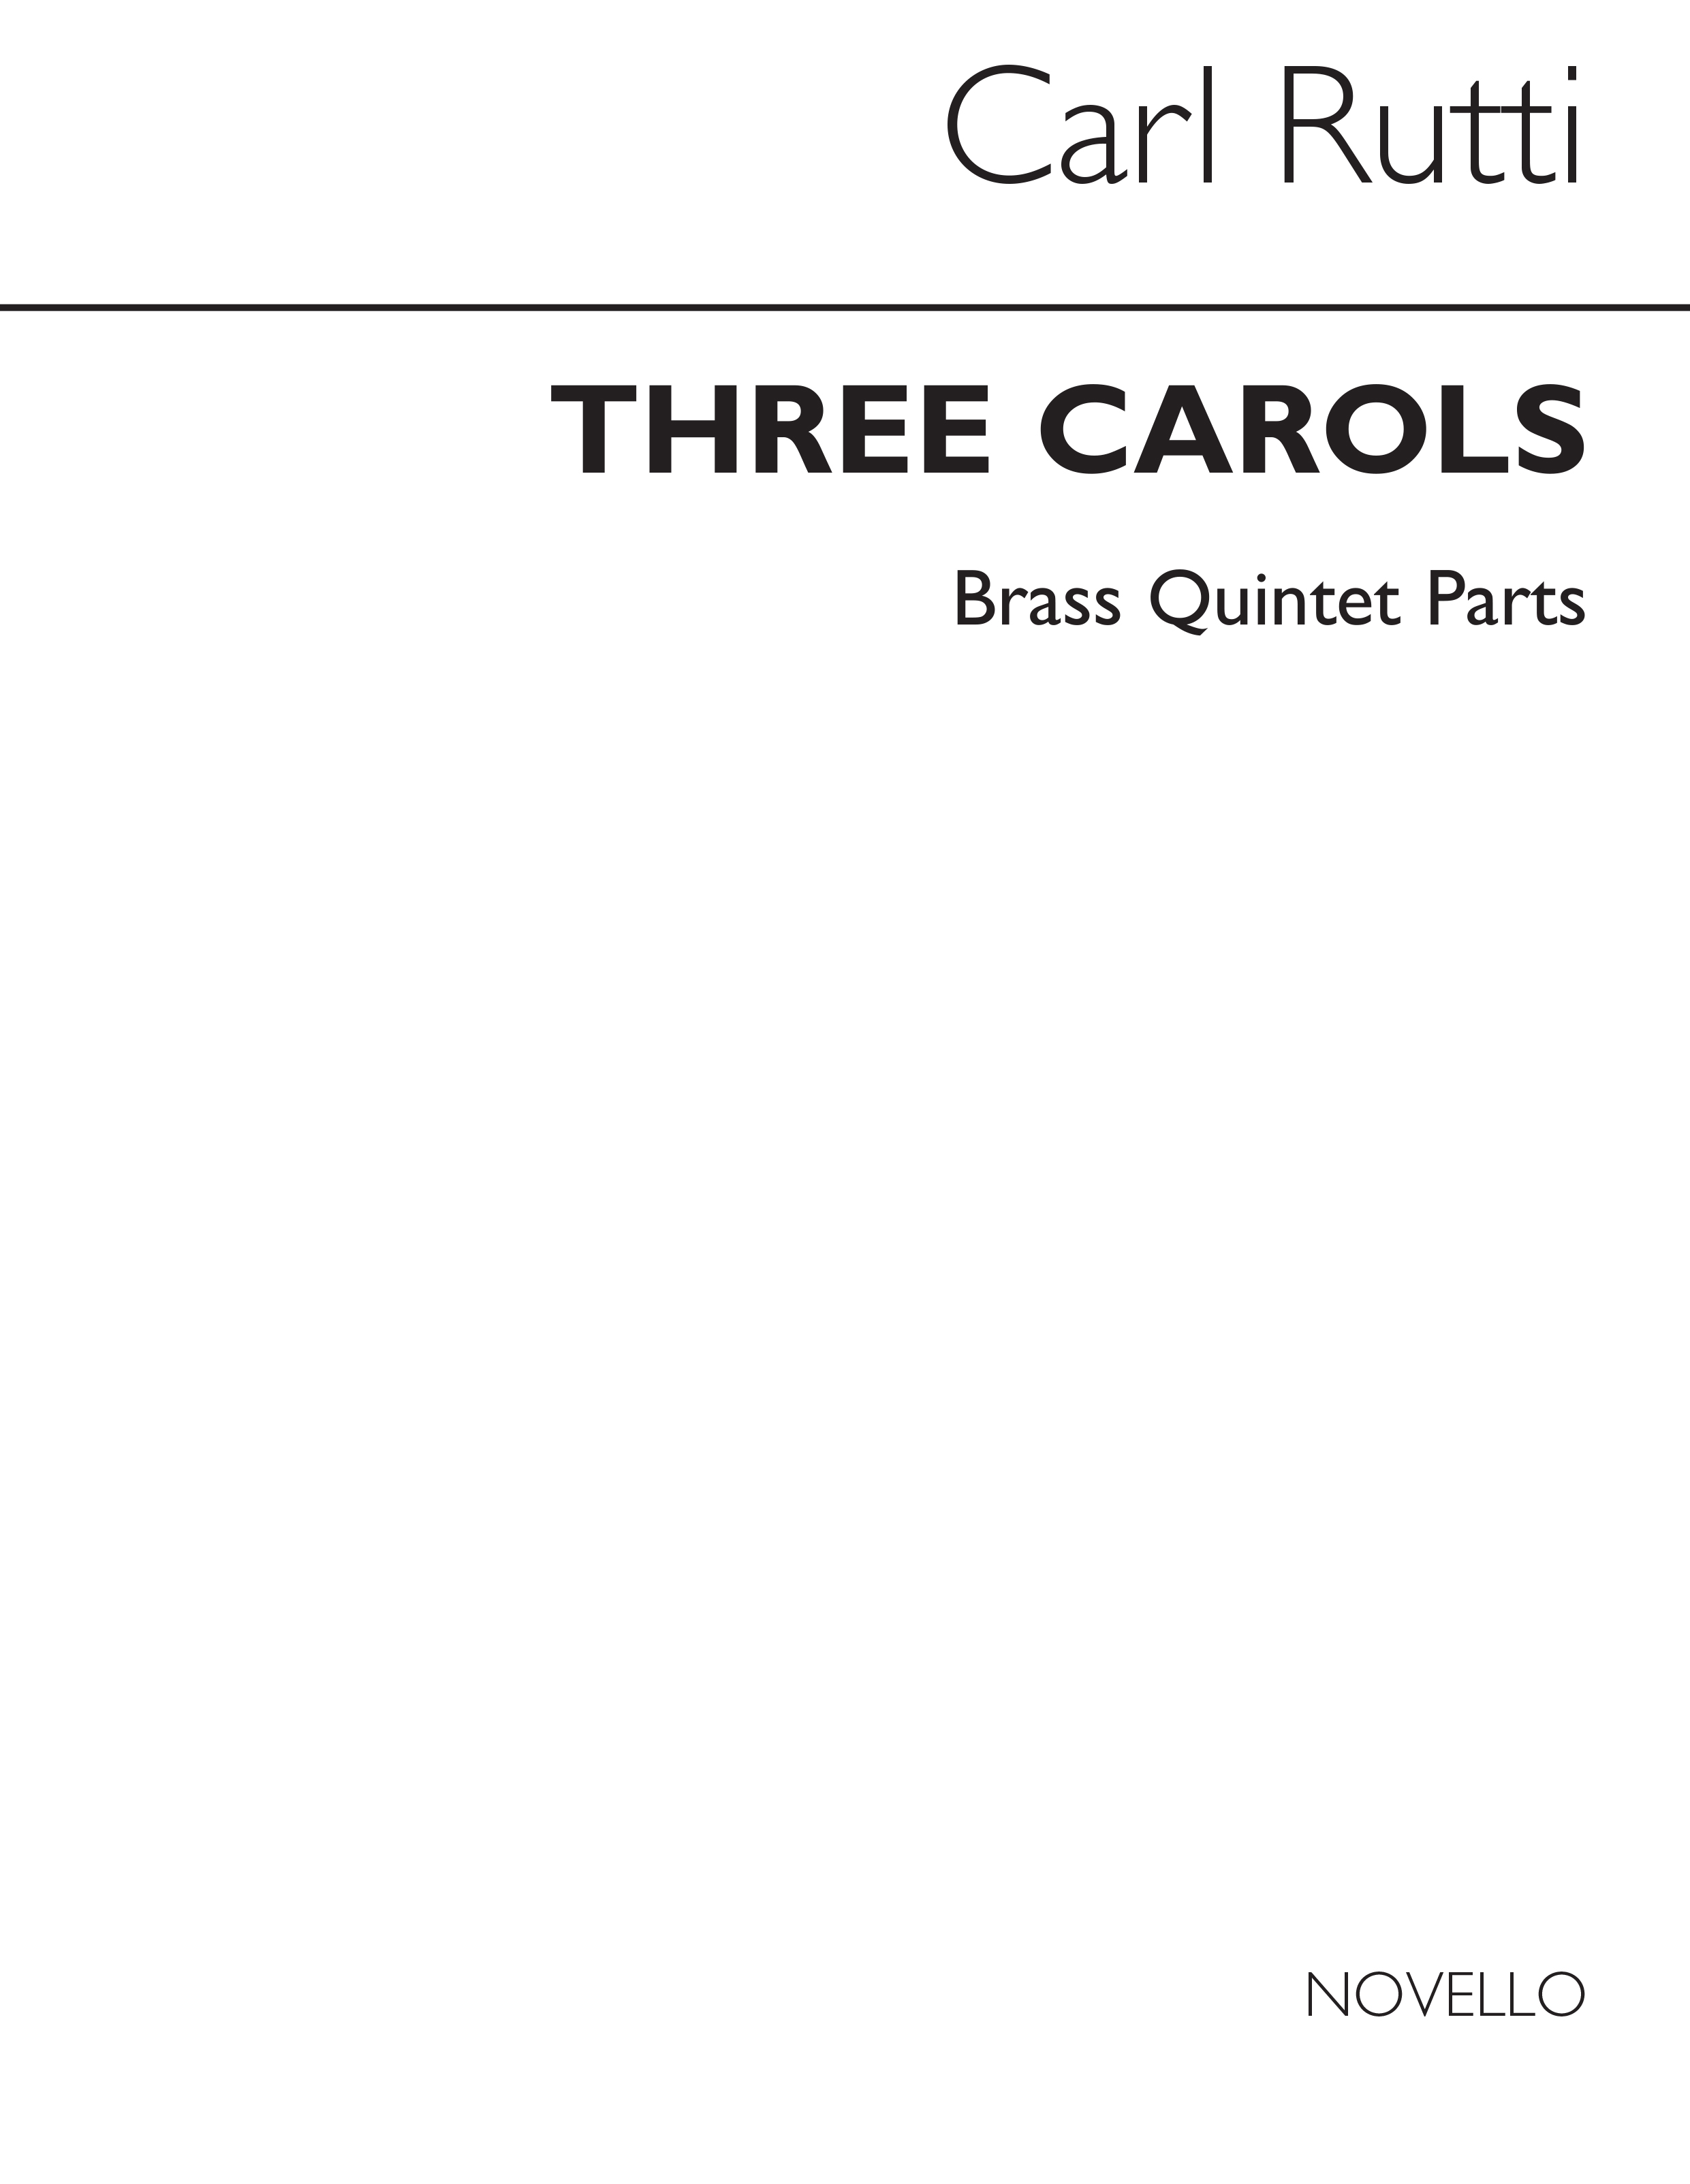 Carl Rtti: Three Carols (Brass Quintet Parts)